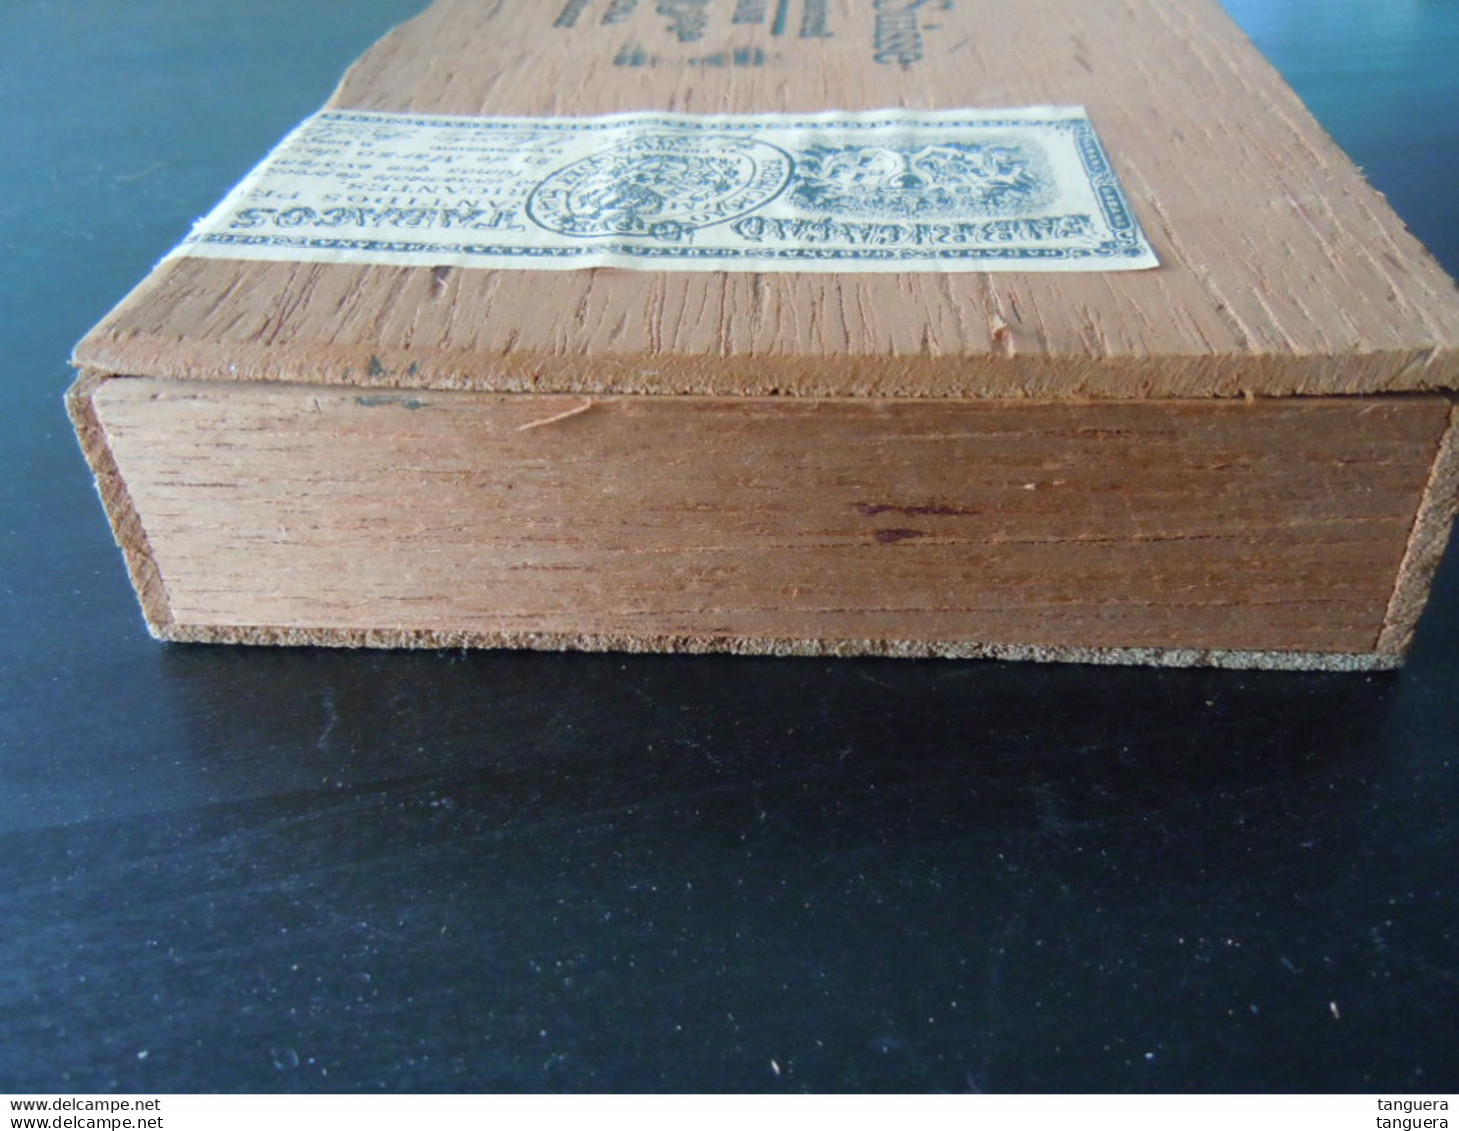 Grand Suisse Havane Aroma Corona cederhout houten kist voor sigaren boïte en bois pour cigares 21,7 x 14,7 x 3,9 cm